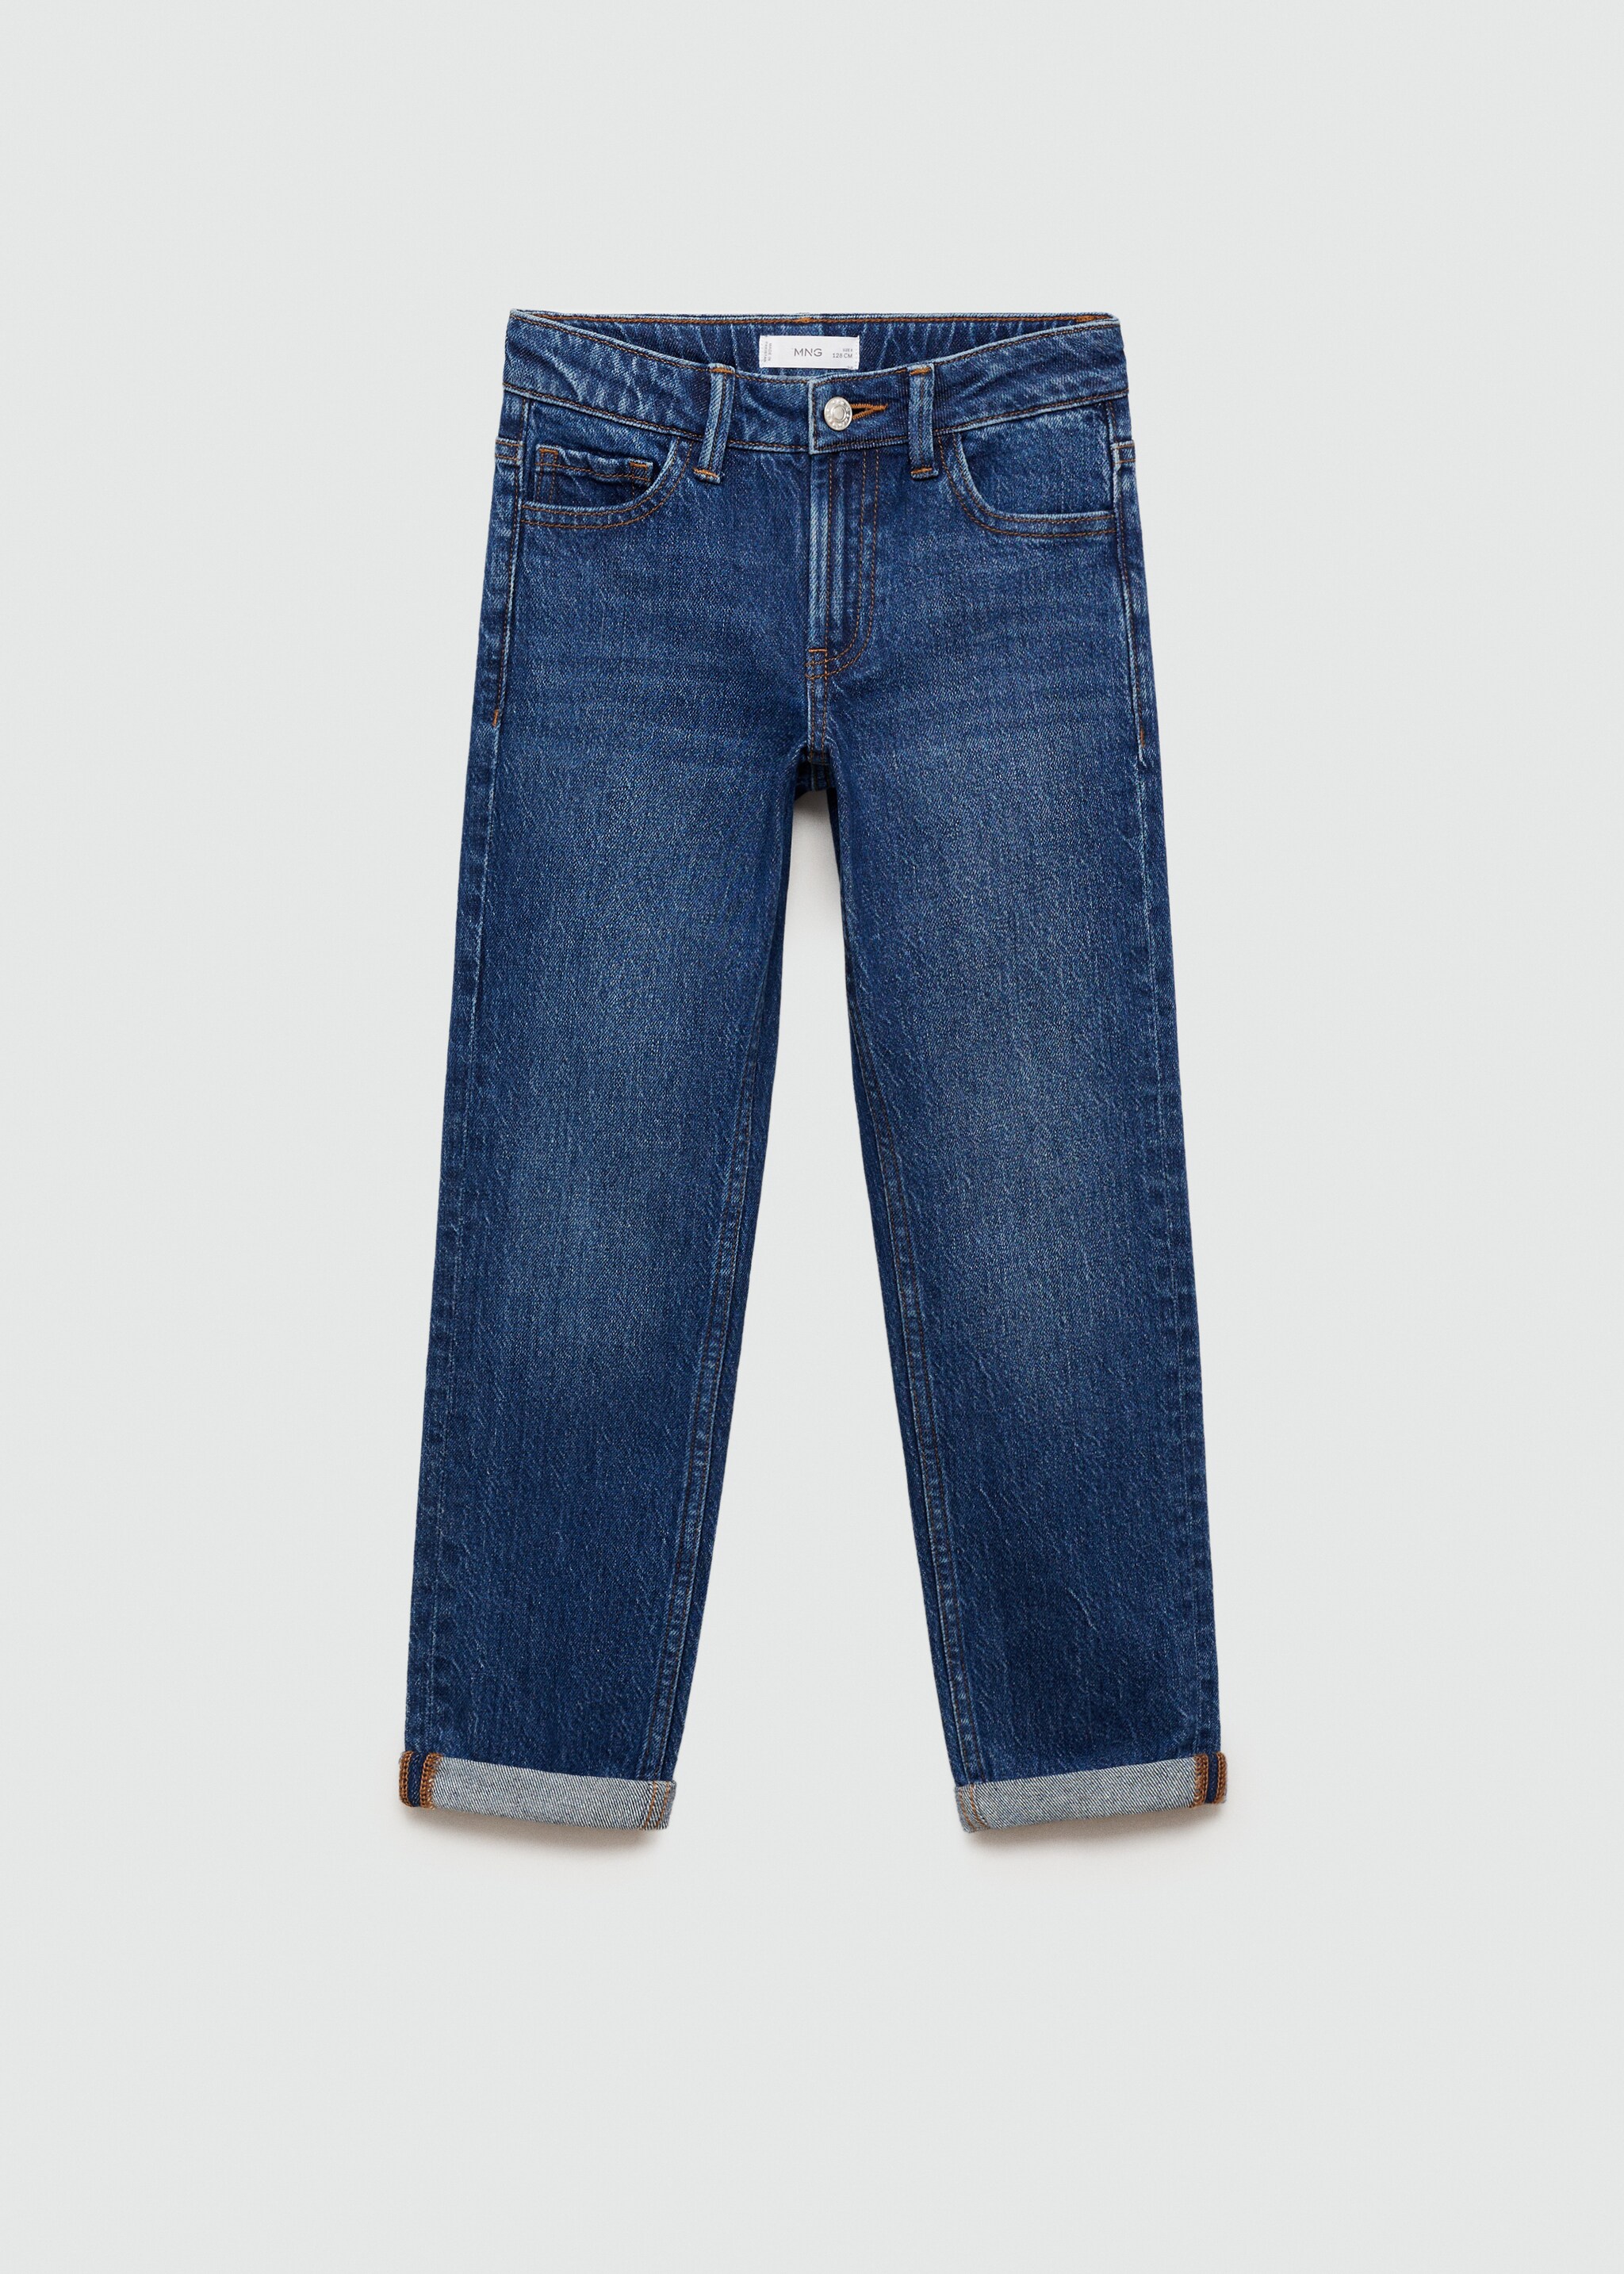 Jeans rectos bajo vuelta - Artículo sin modelo